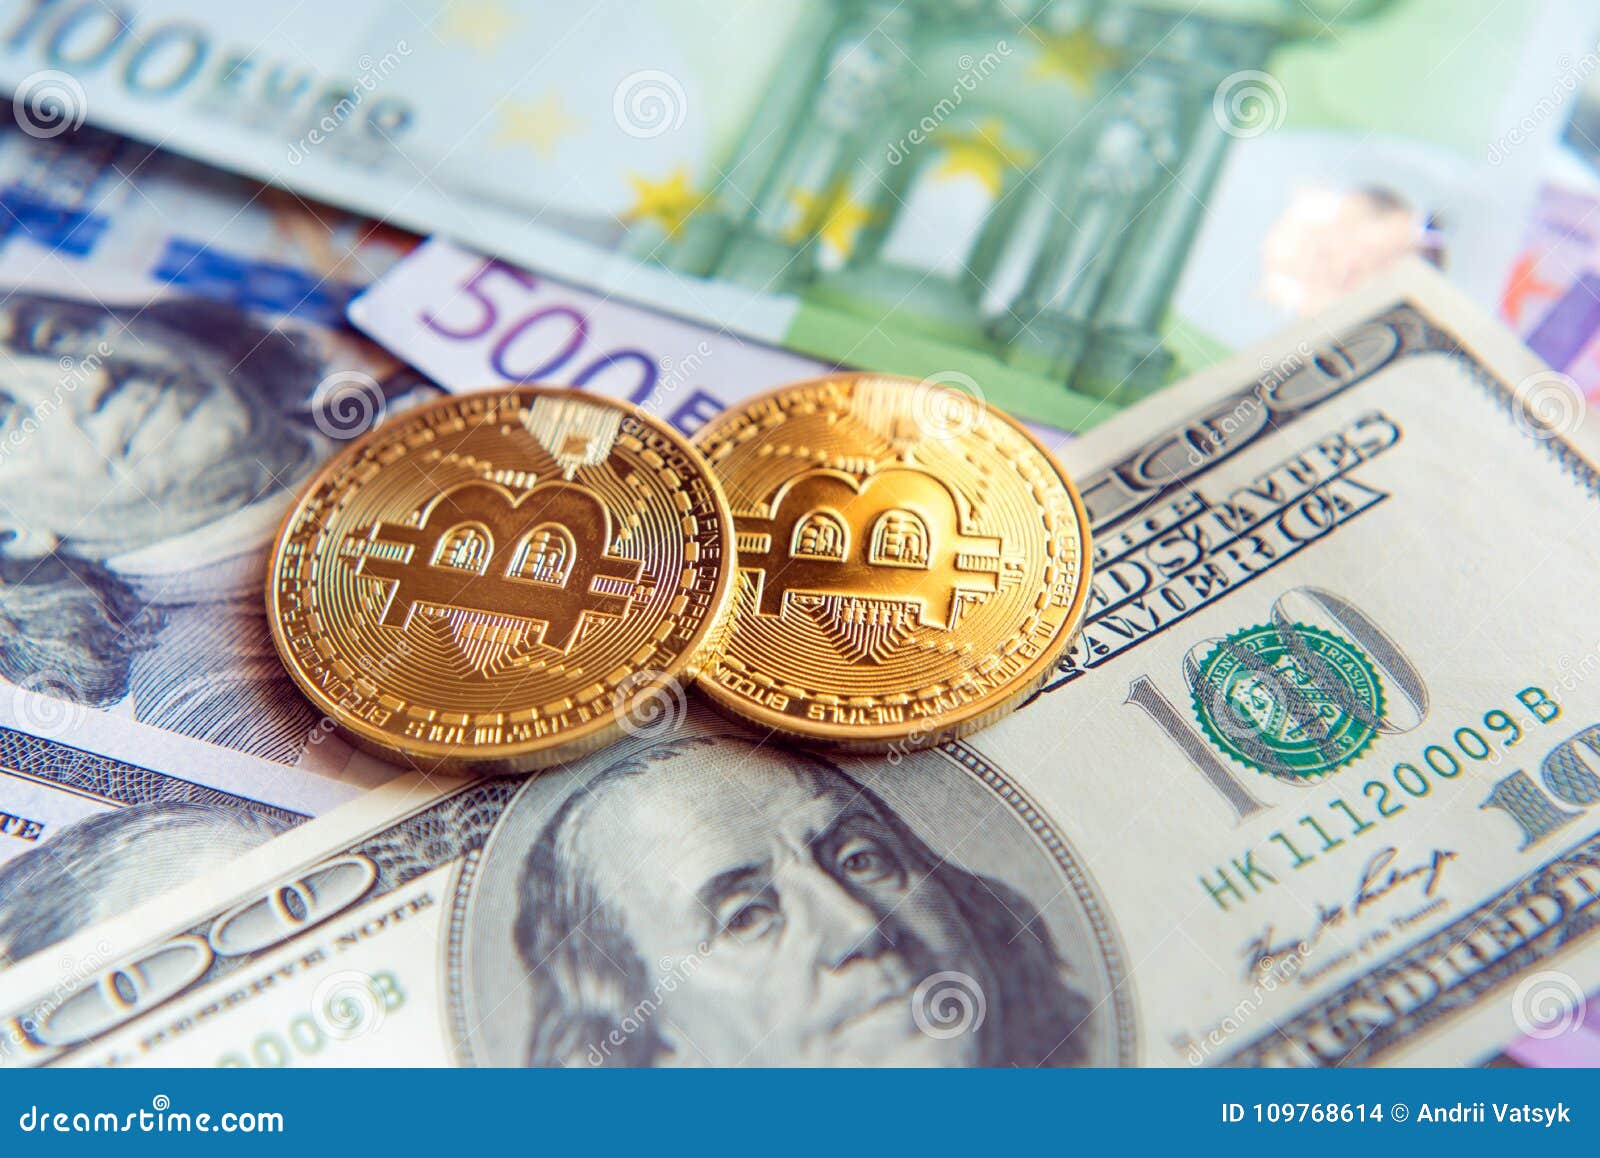 Bitcoins dollars exchange rate как обменять украинские гривны на рубли